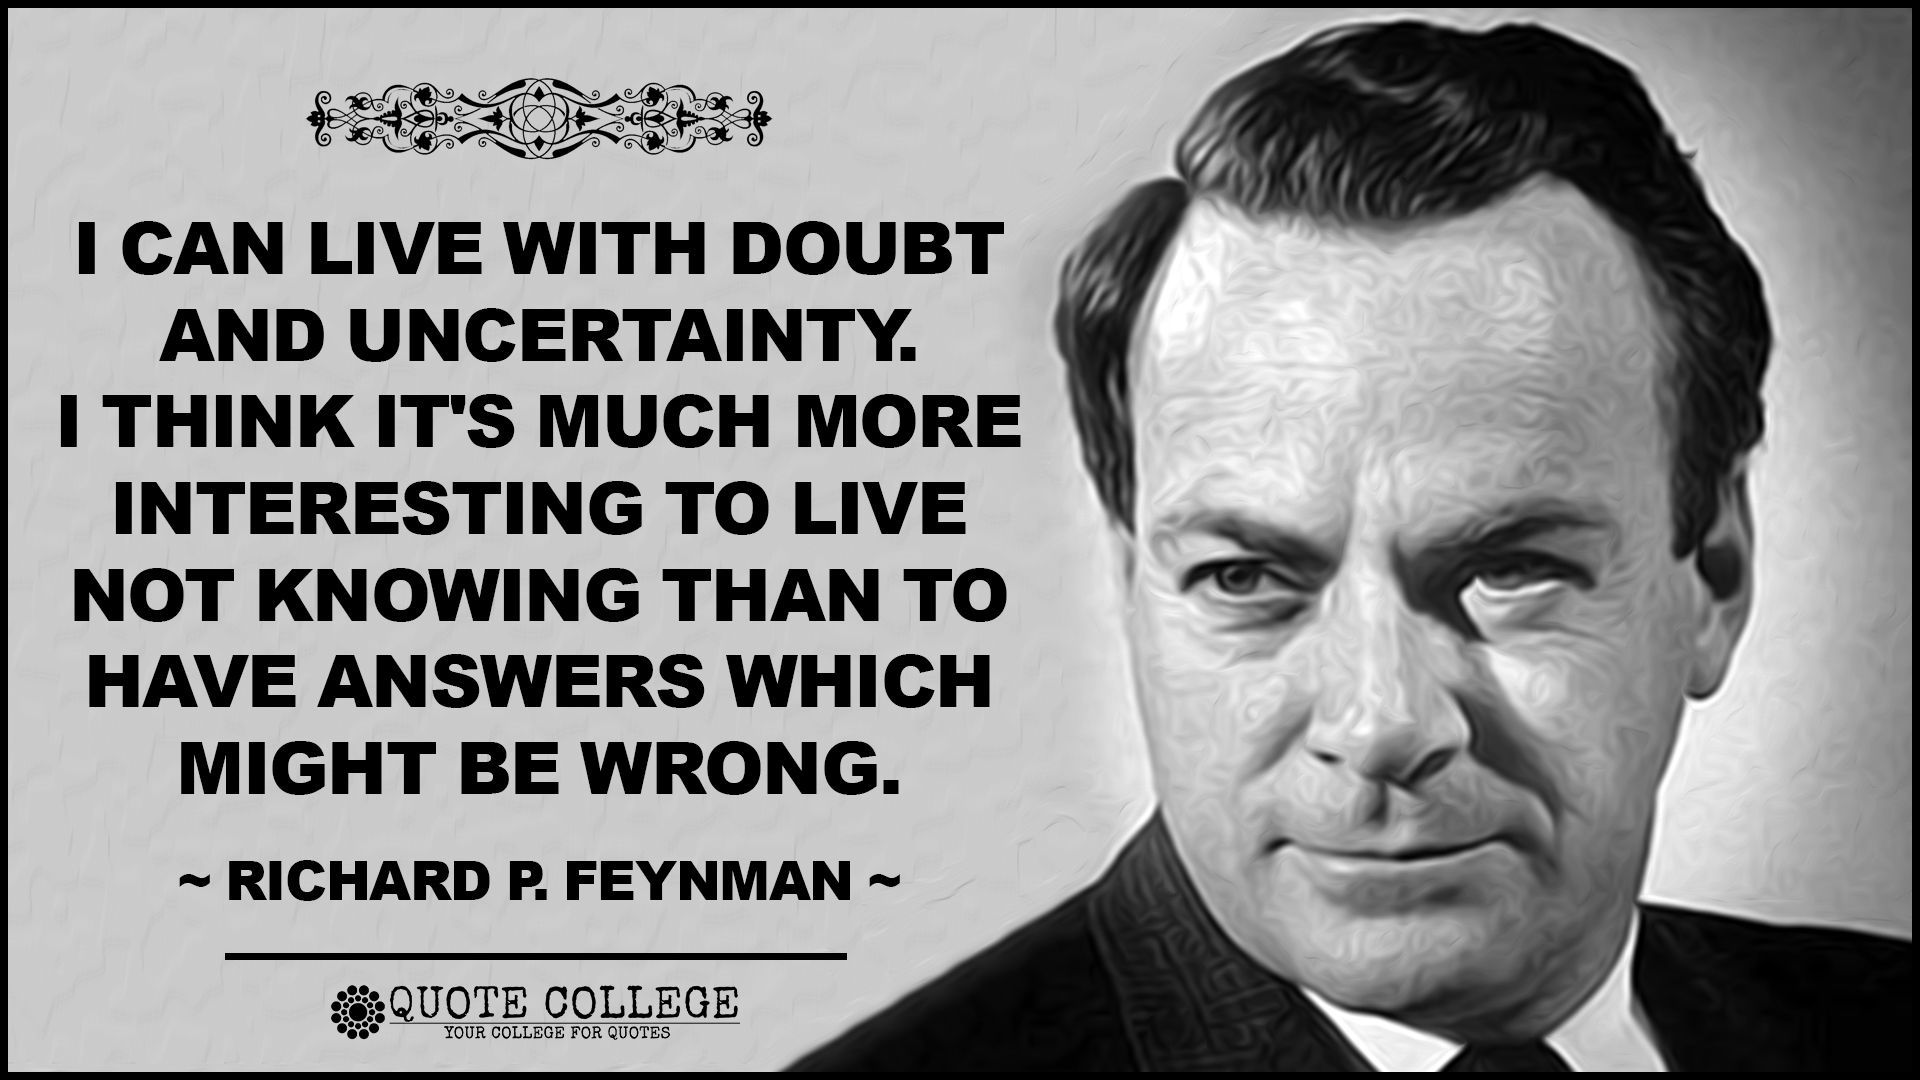 Richard feynman HD wallpapers  Pxfuel